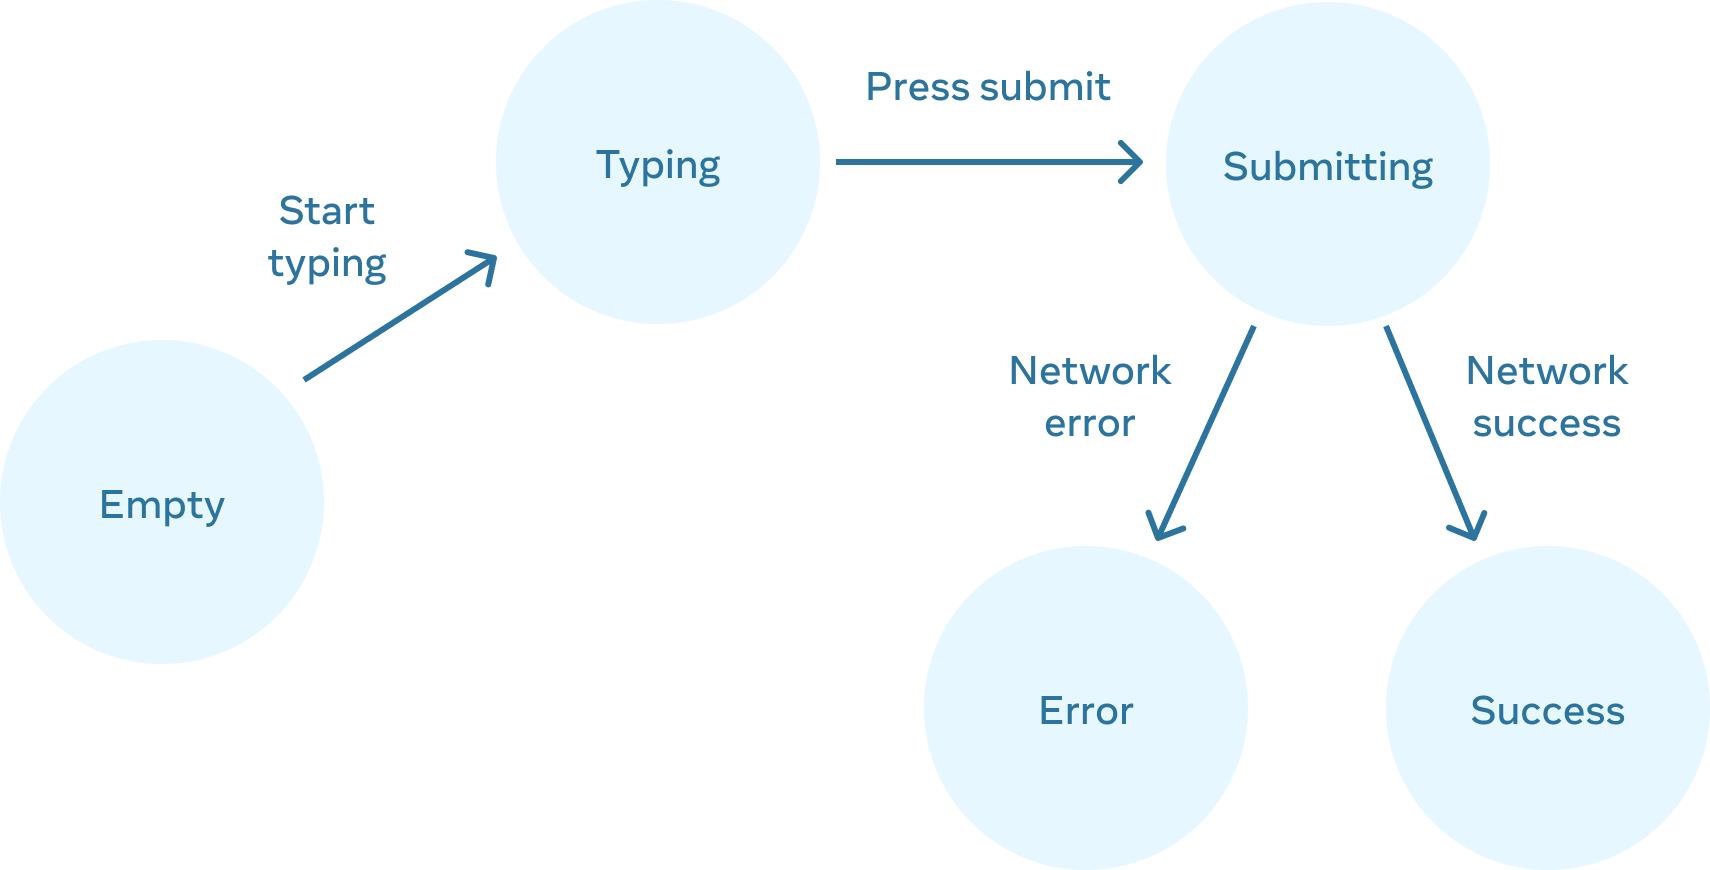 流程图从左到右共有 5 个节点。第一个 'empty' 节点通过 'start typing' 分支与 'typing' 节点相连。'typing' 节点则通过 'press submit' 分支与拥有两个分支的 'submitting' 节点相连。其中 'submitting' 节点左侧通过 'network error' 分支与 'error' 节点相连，而右侧则是通过 'network success' 分支与 'success' 节点相连。